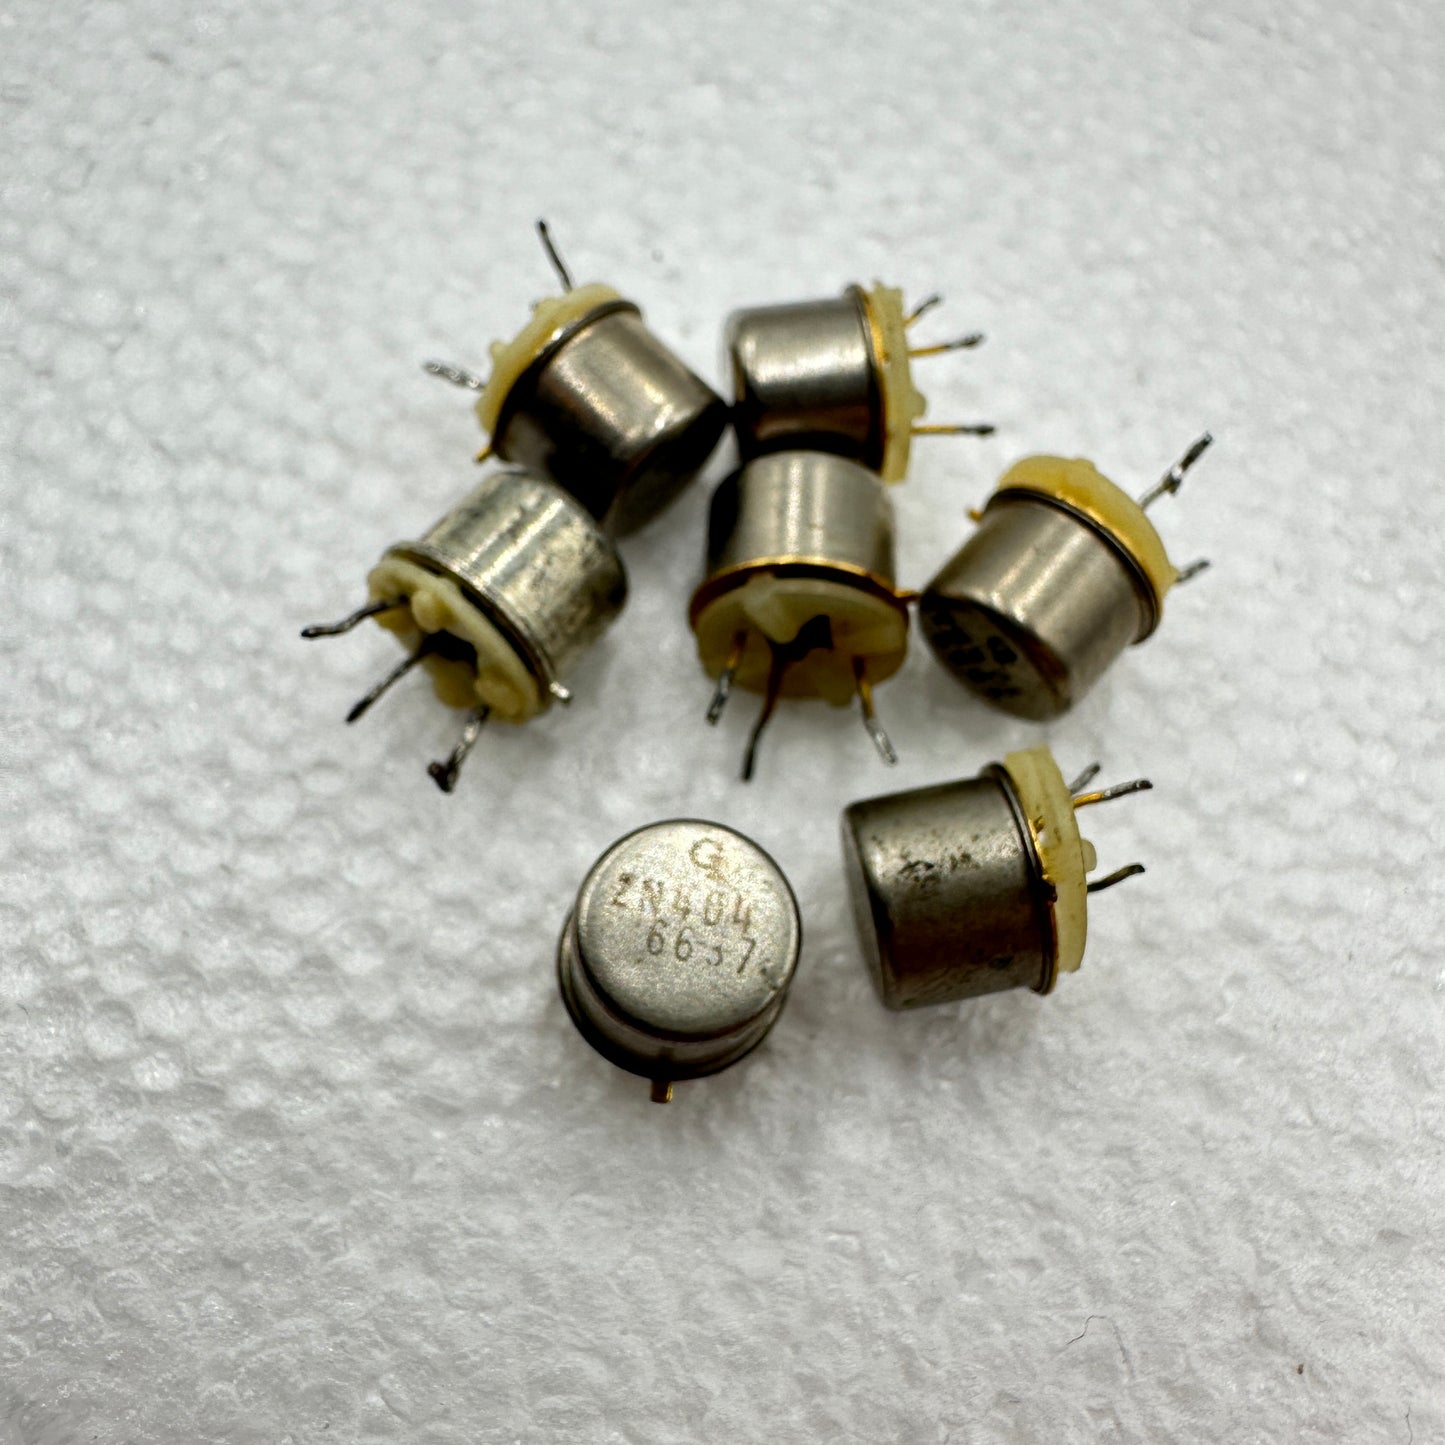 2N404 Germanium Transistor, TO-5 Short-Leg Pulls, GI